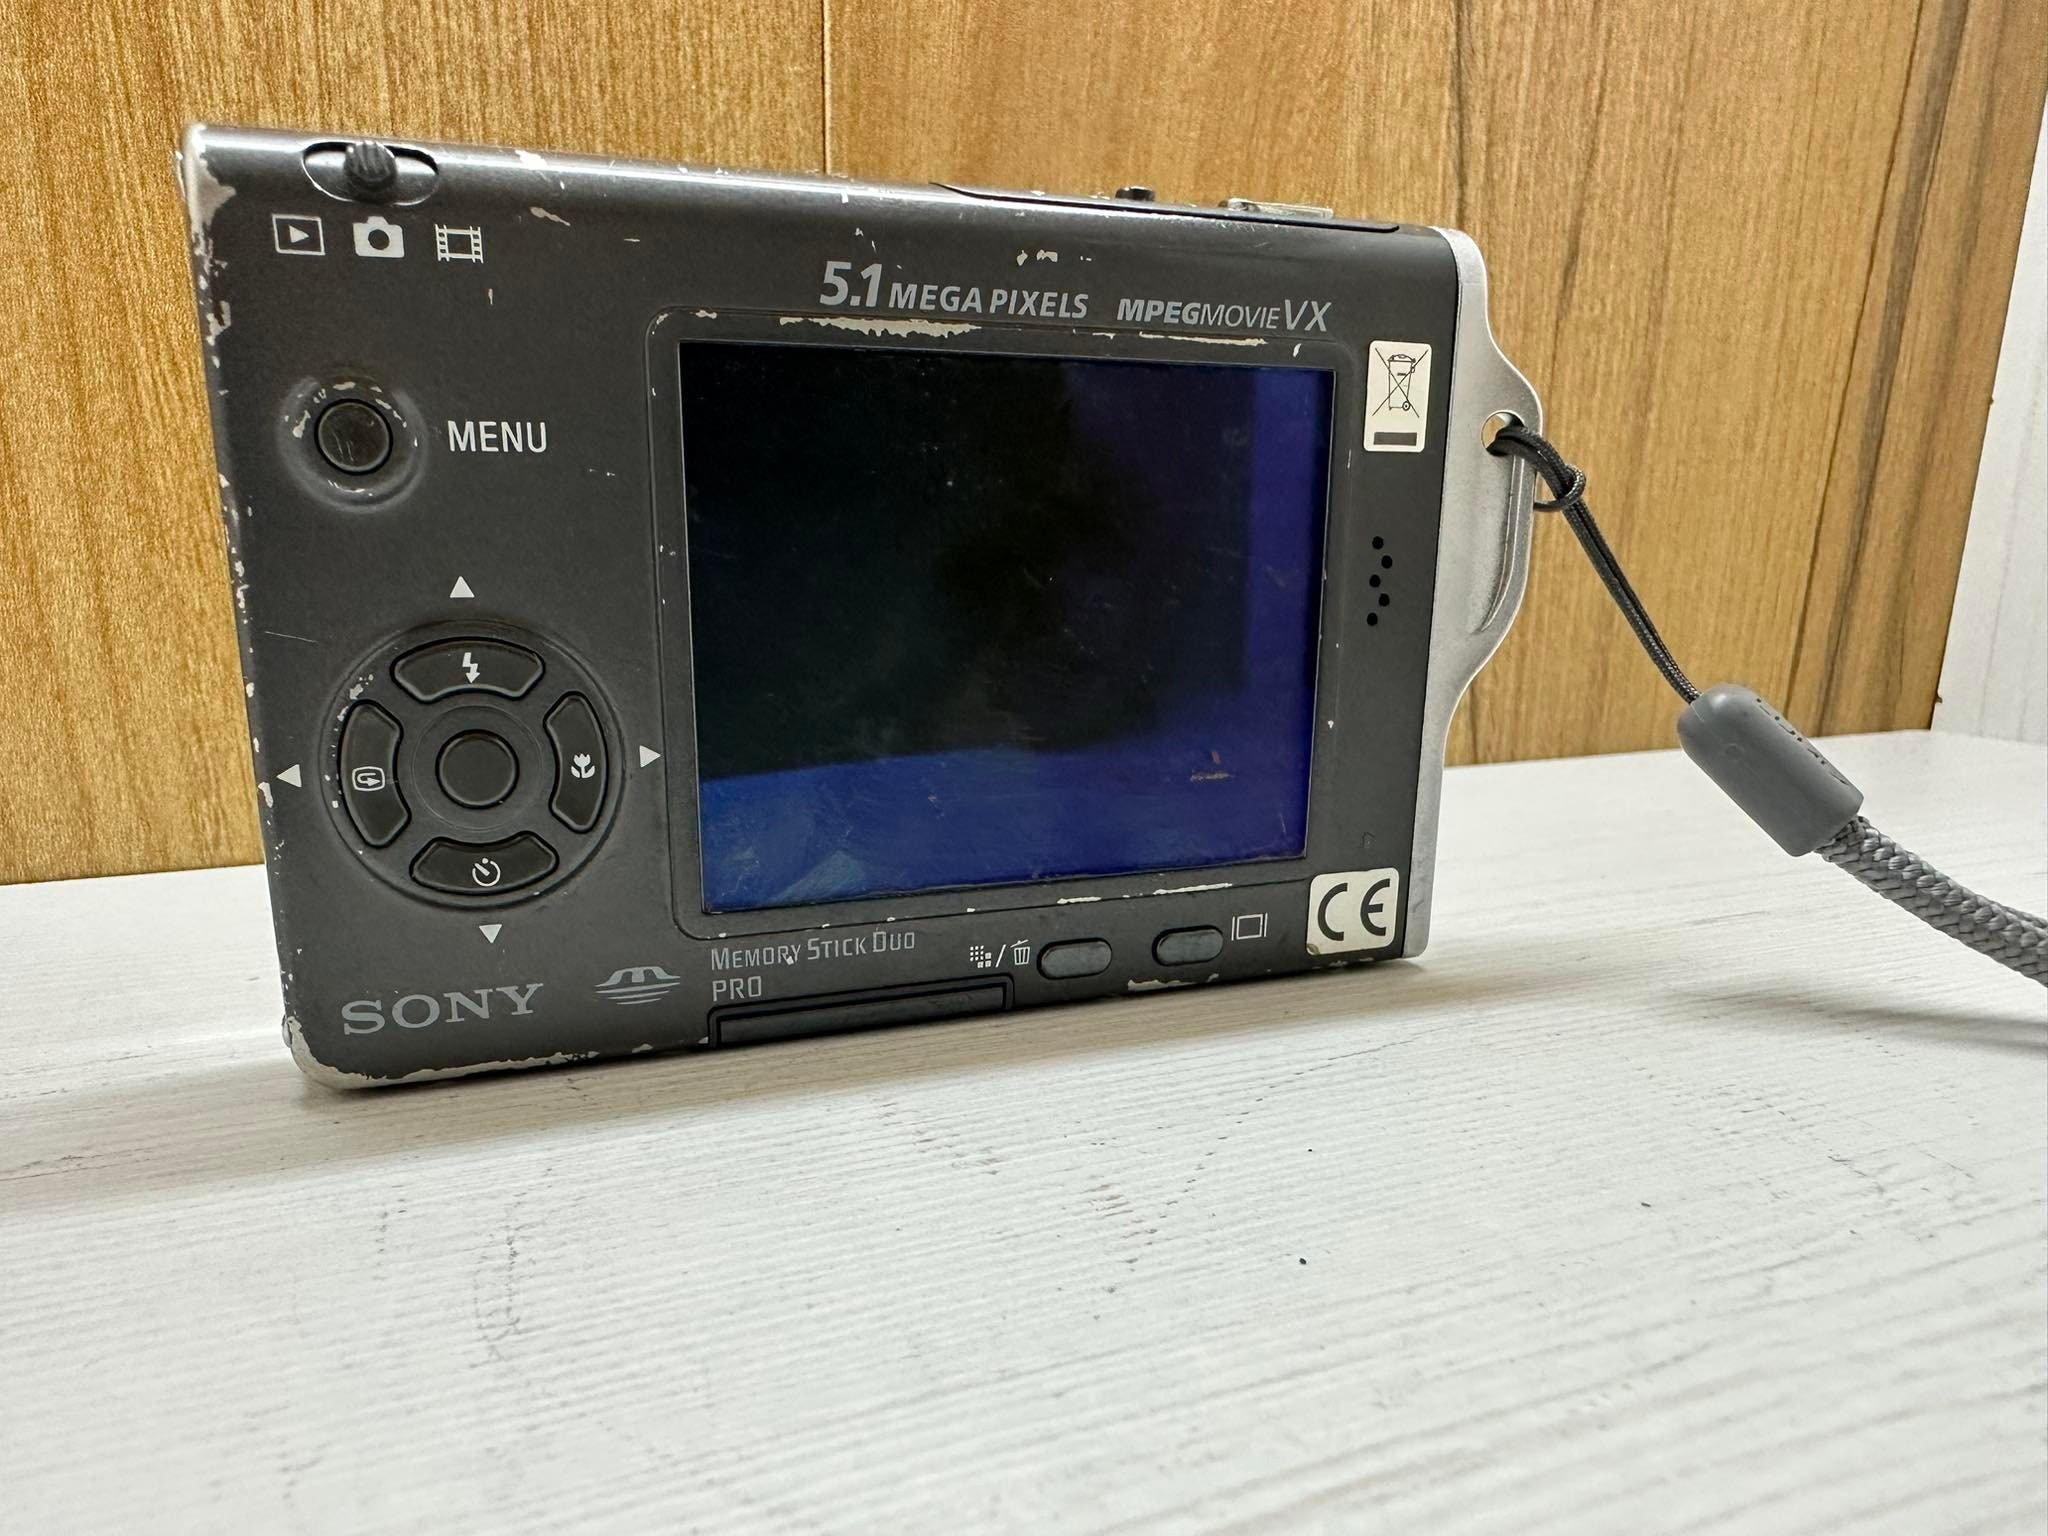 Sony Cybershot Dsc-t7 Ultrathin Digital Still Camera 5.1 MP 3X 